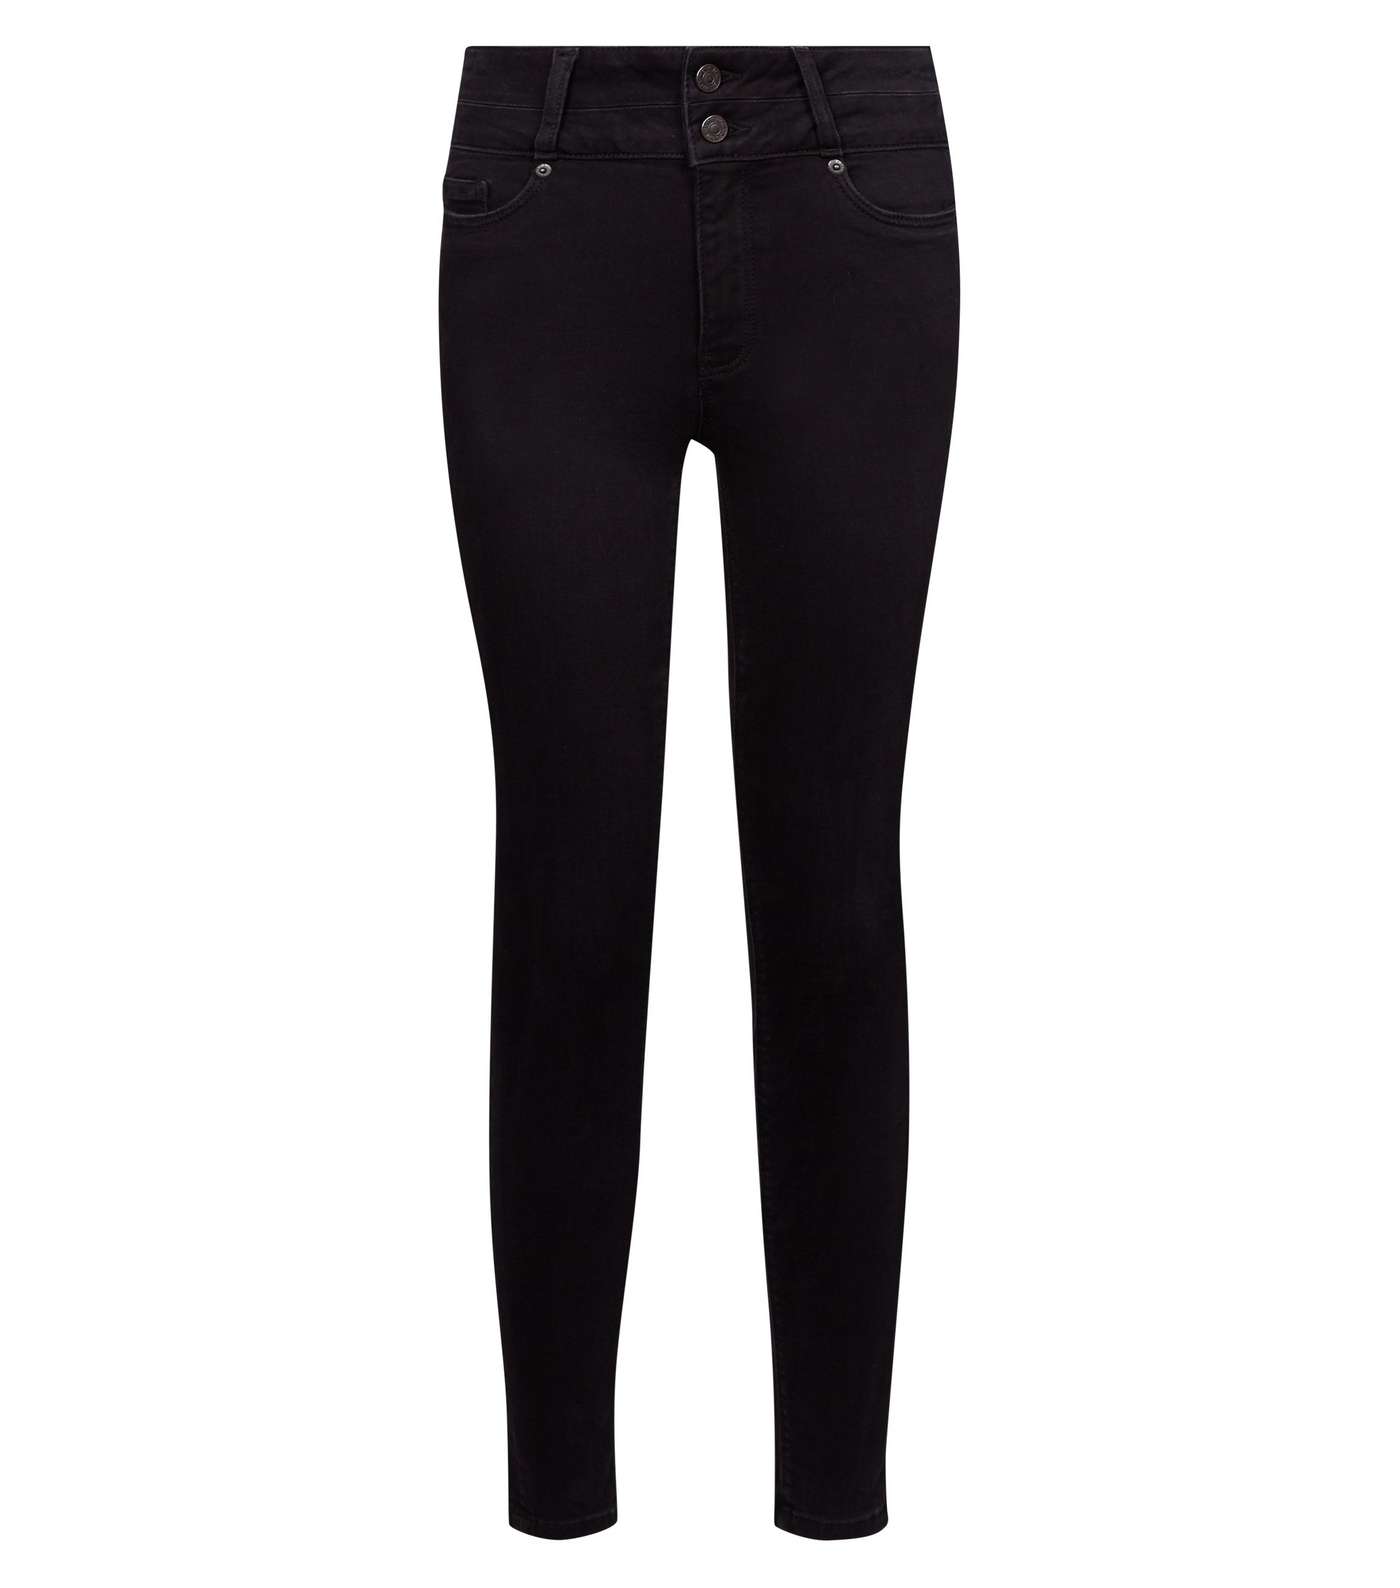 Black High Waist Skinny 'Lift & Shape' Jeans Image 4